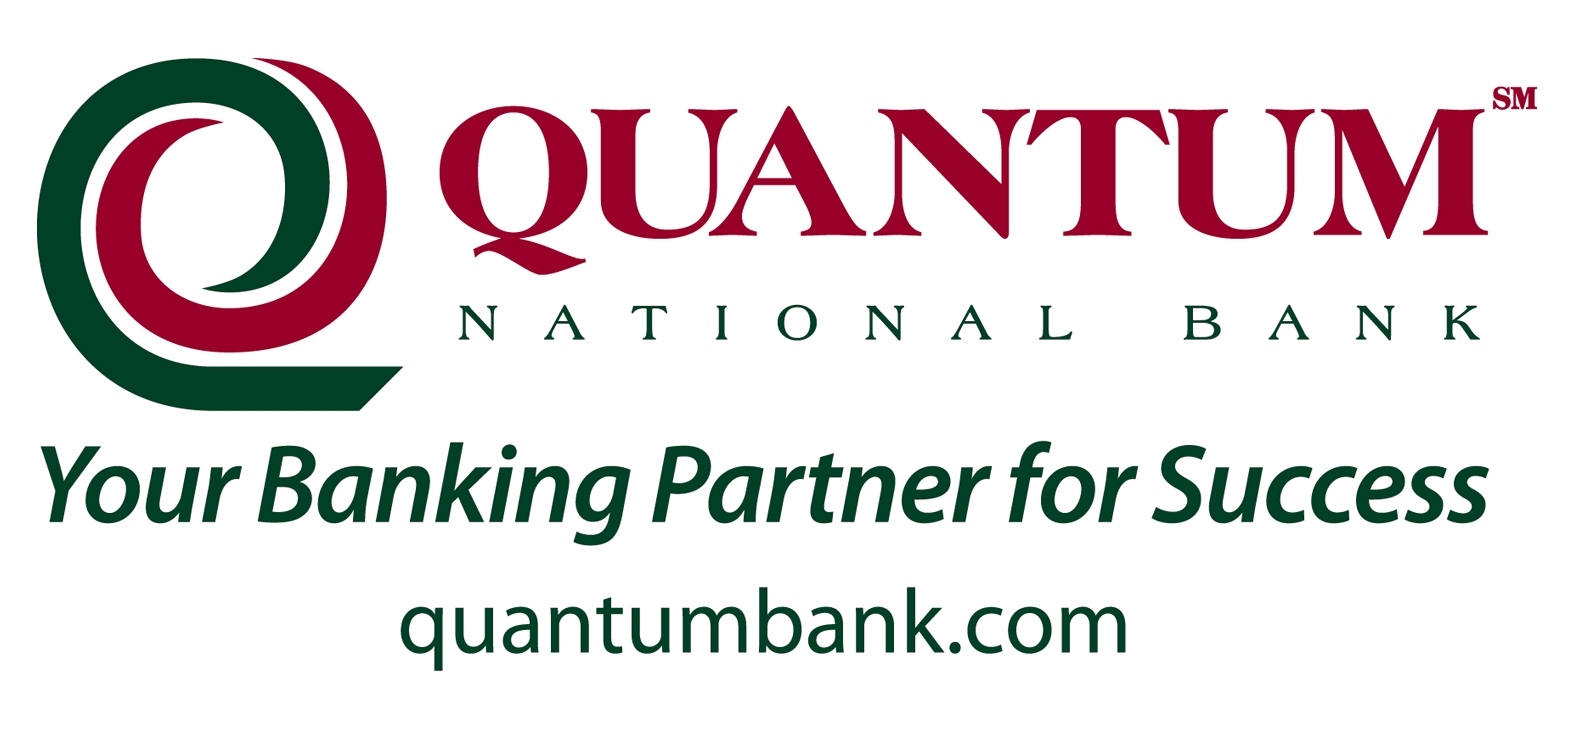 Quantum logo with slogan